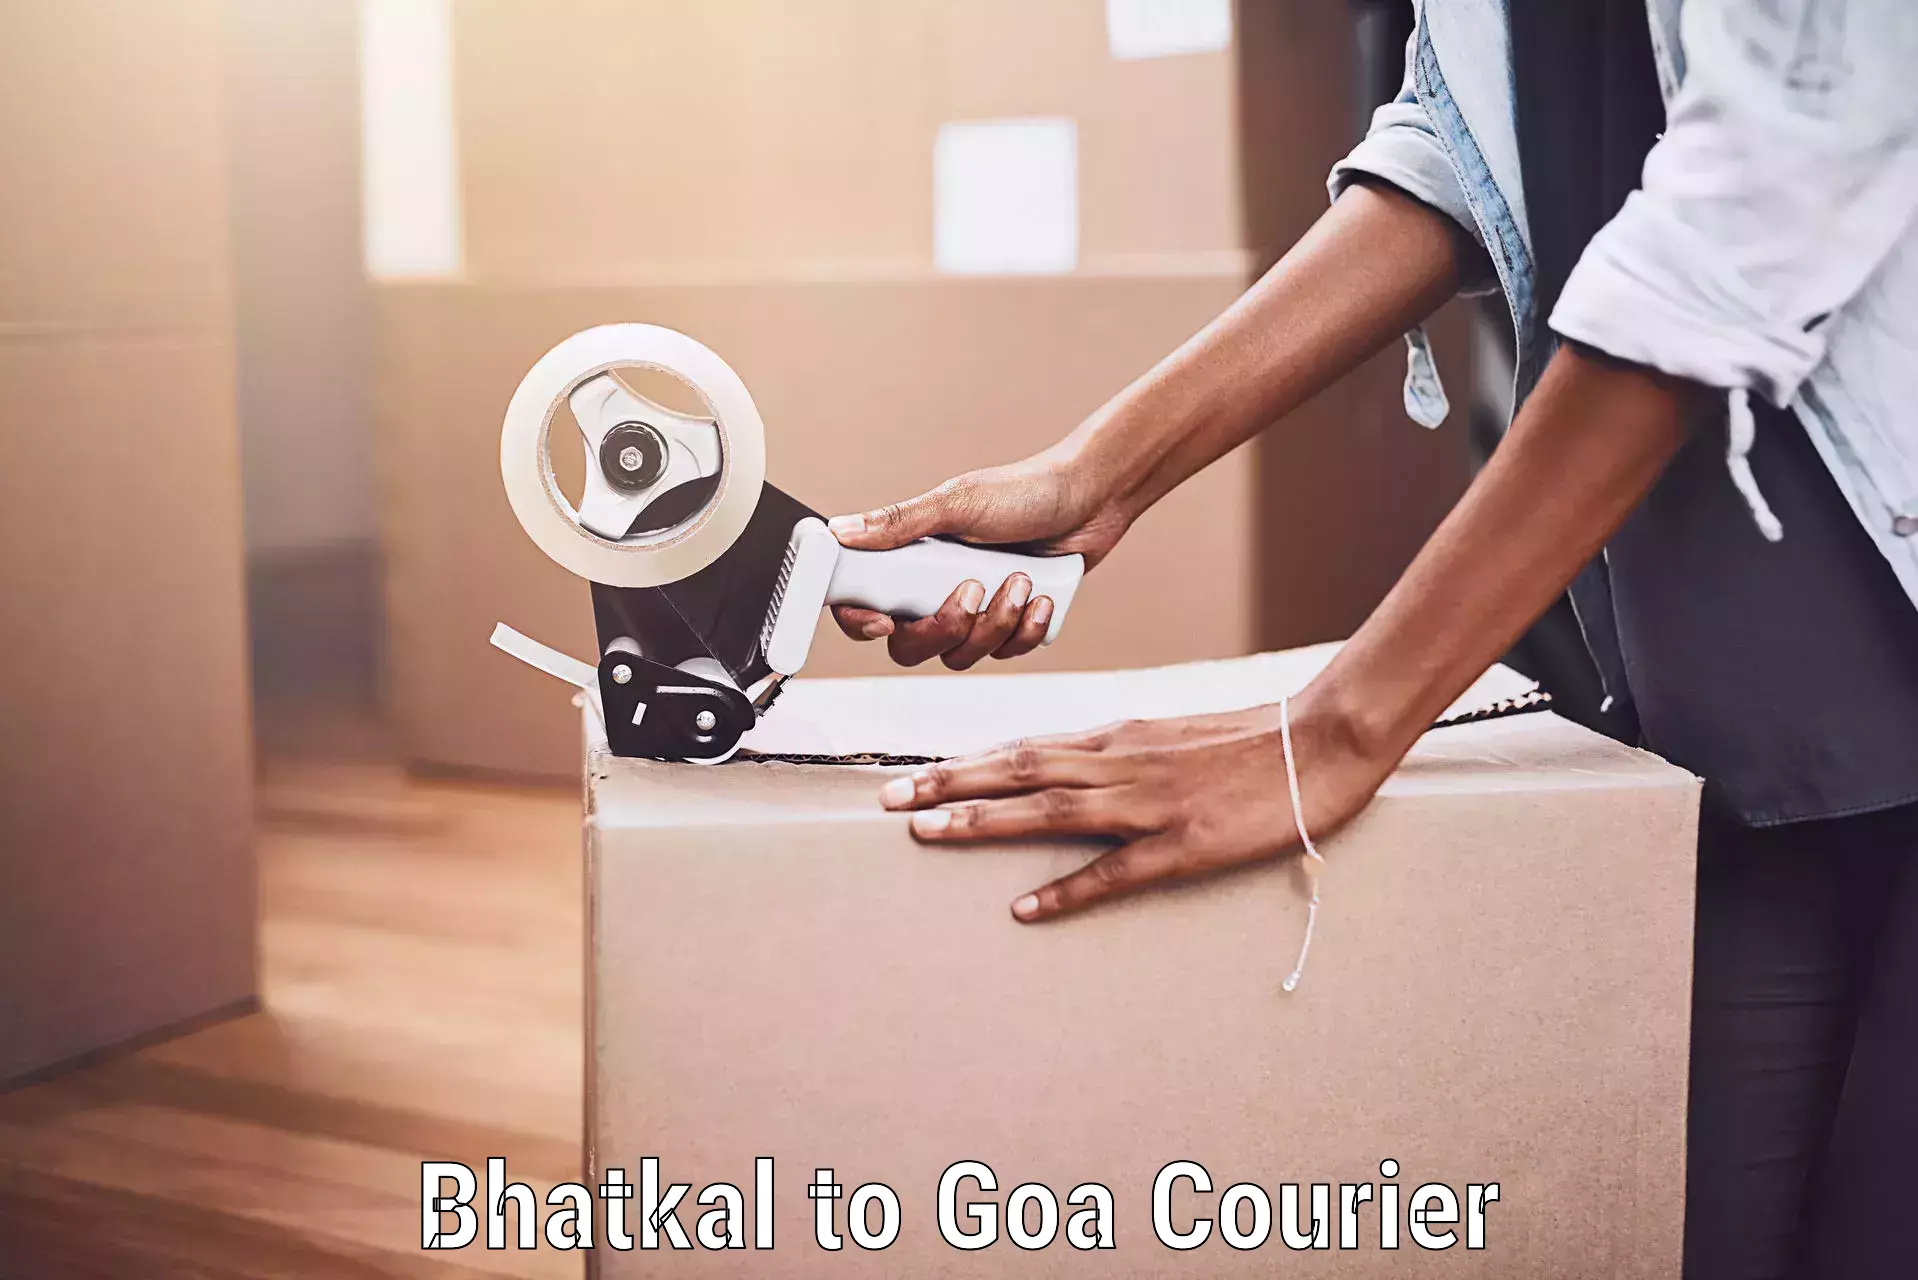 Urgent luggage shipment Bhatkal to Goa